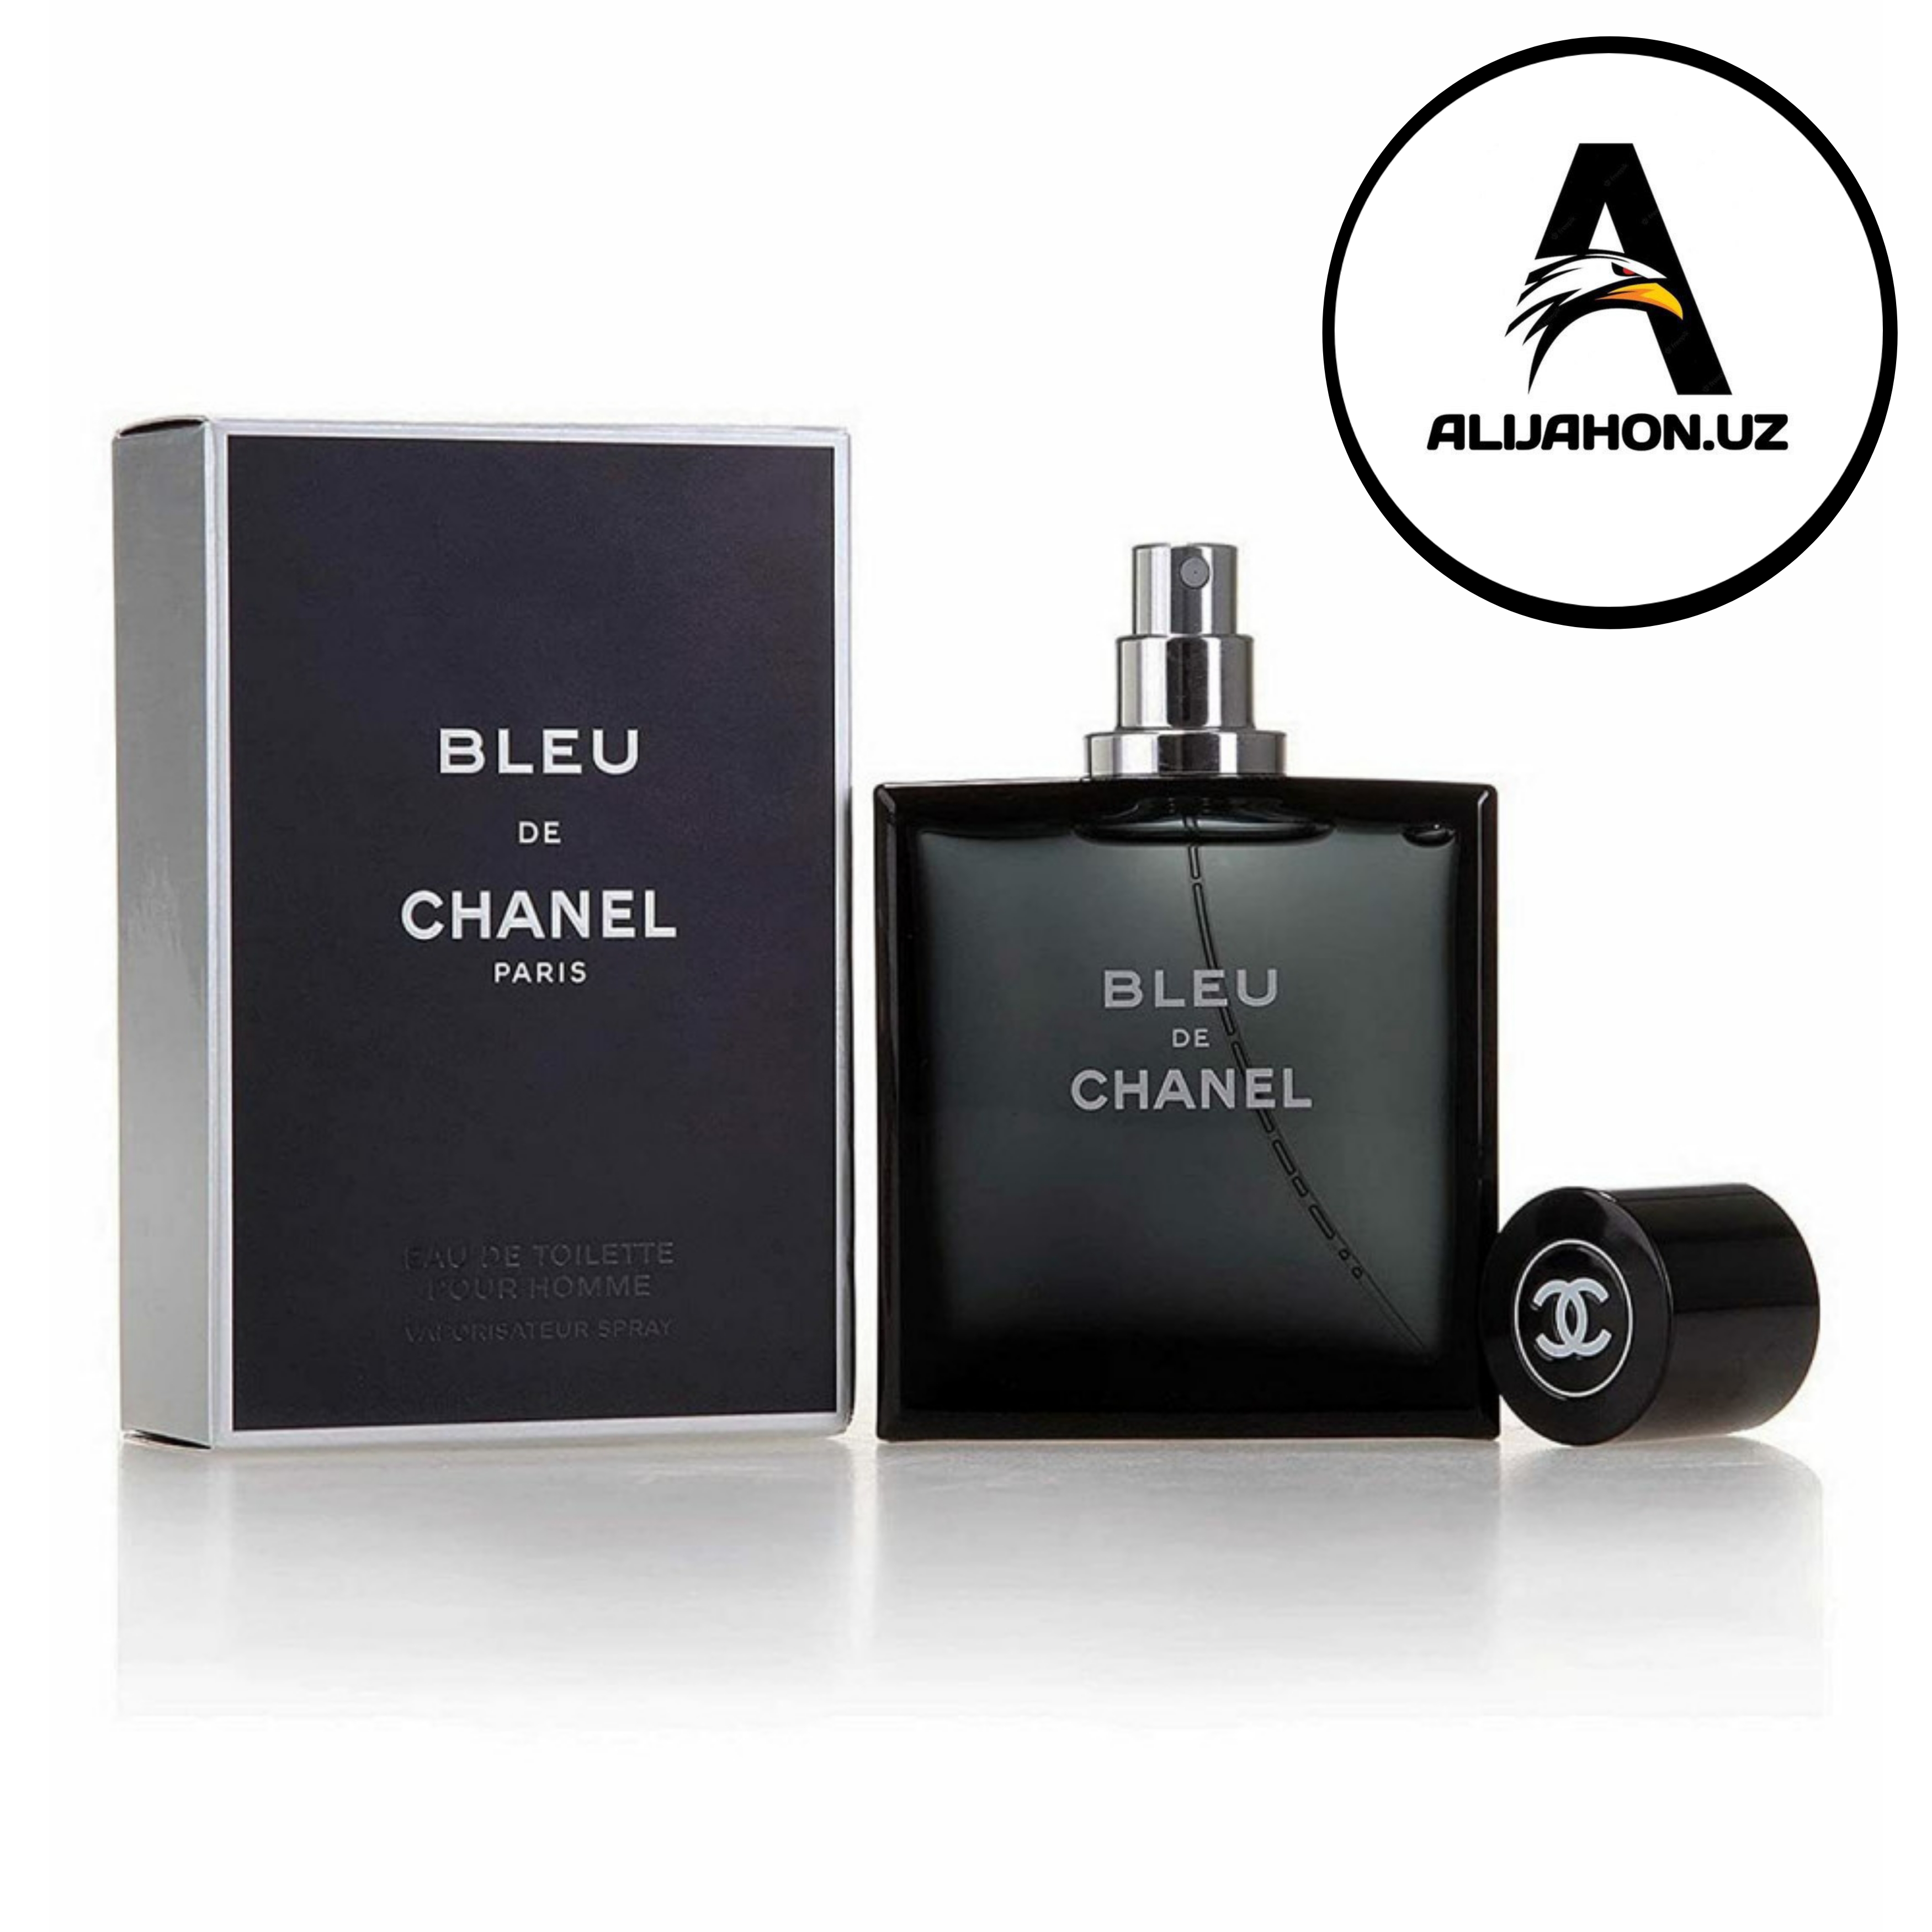 Мужской парфюм блю де шанель. Chanel bleu de Chanel Parfum 100 ml. Blue de Chanel m (Chanel) 100m. Chanel Blue de Chanel 100ml. Бле де Шанель, 100мл,мужской Парфюм.